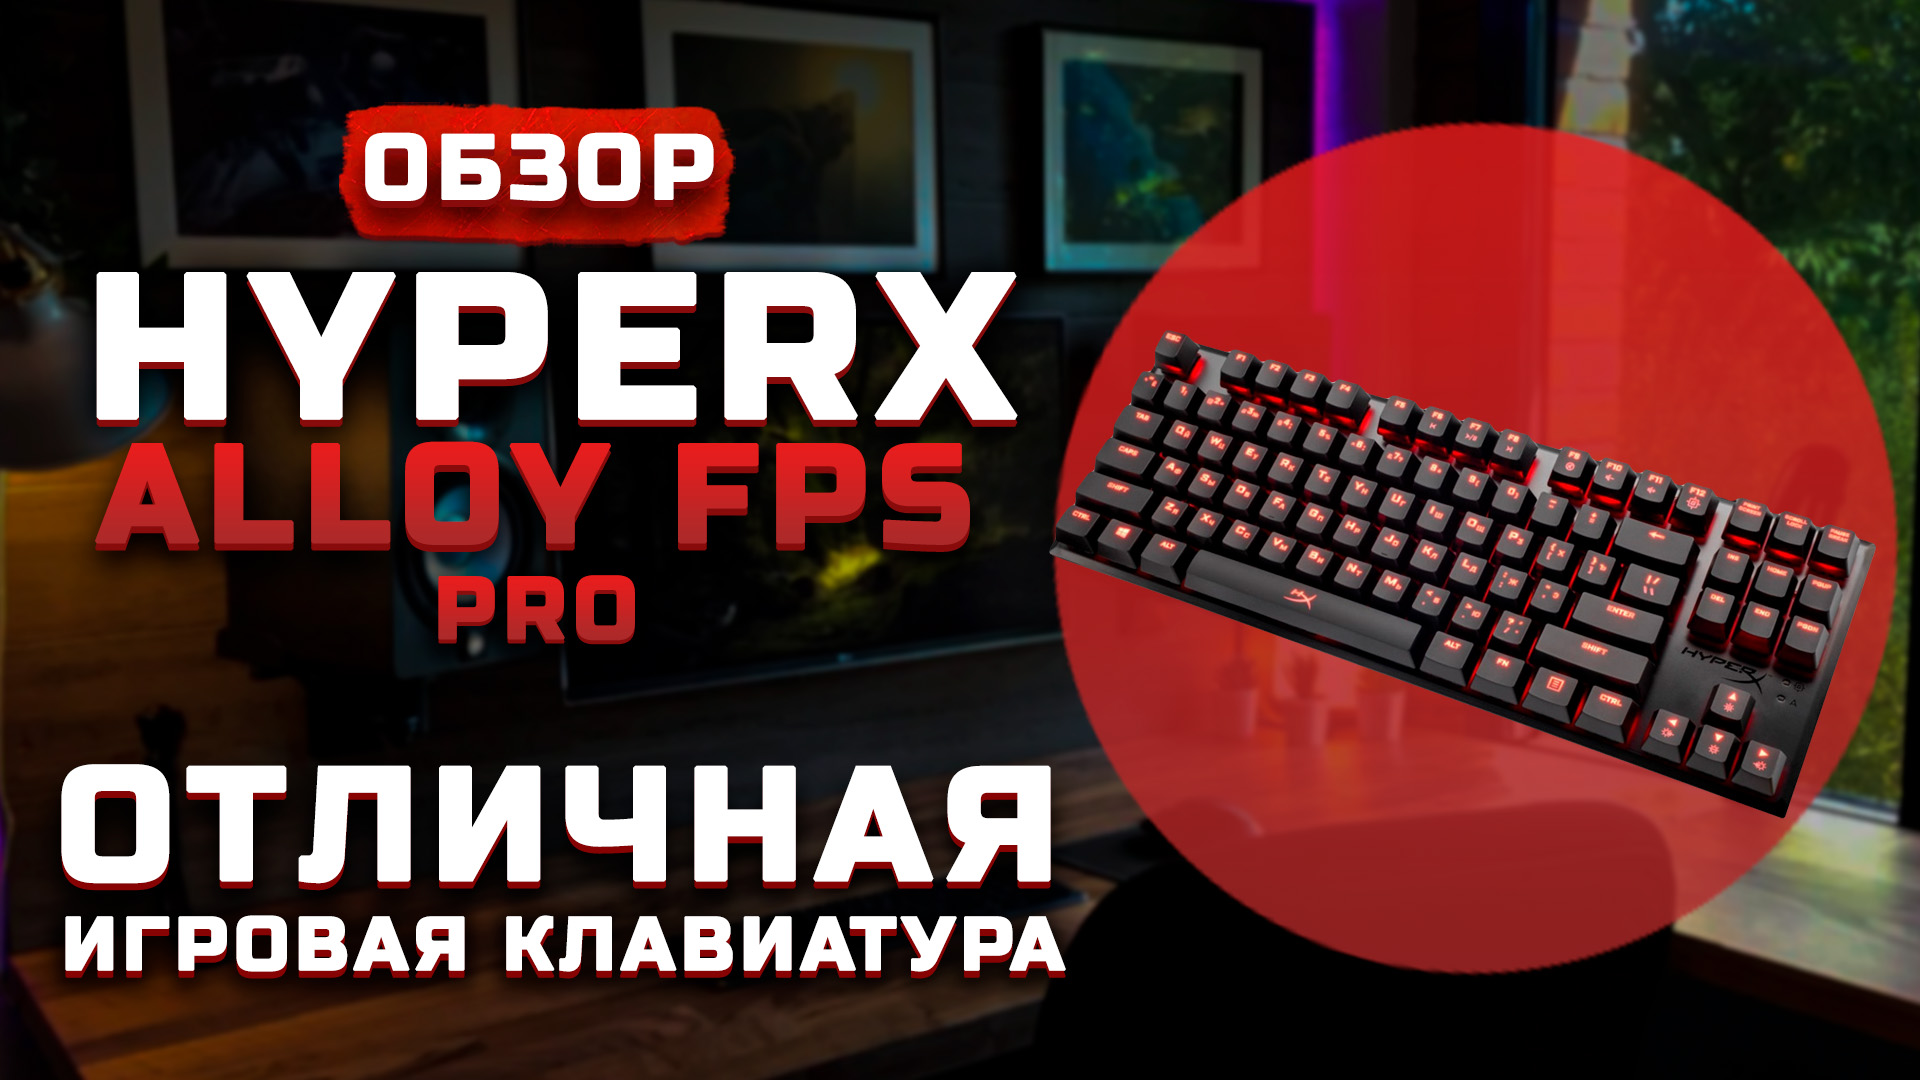 Обзор HyperX Alloy FPS Pro | Отличная игровая клавиатура